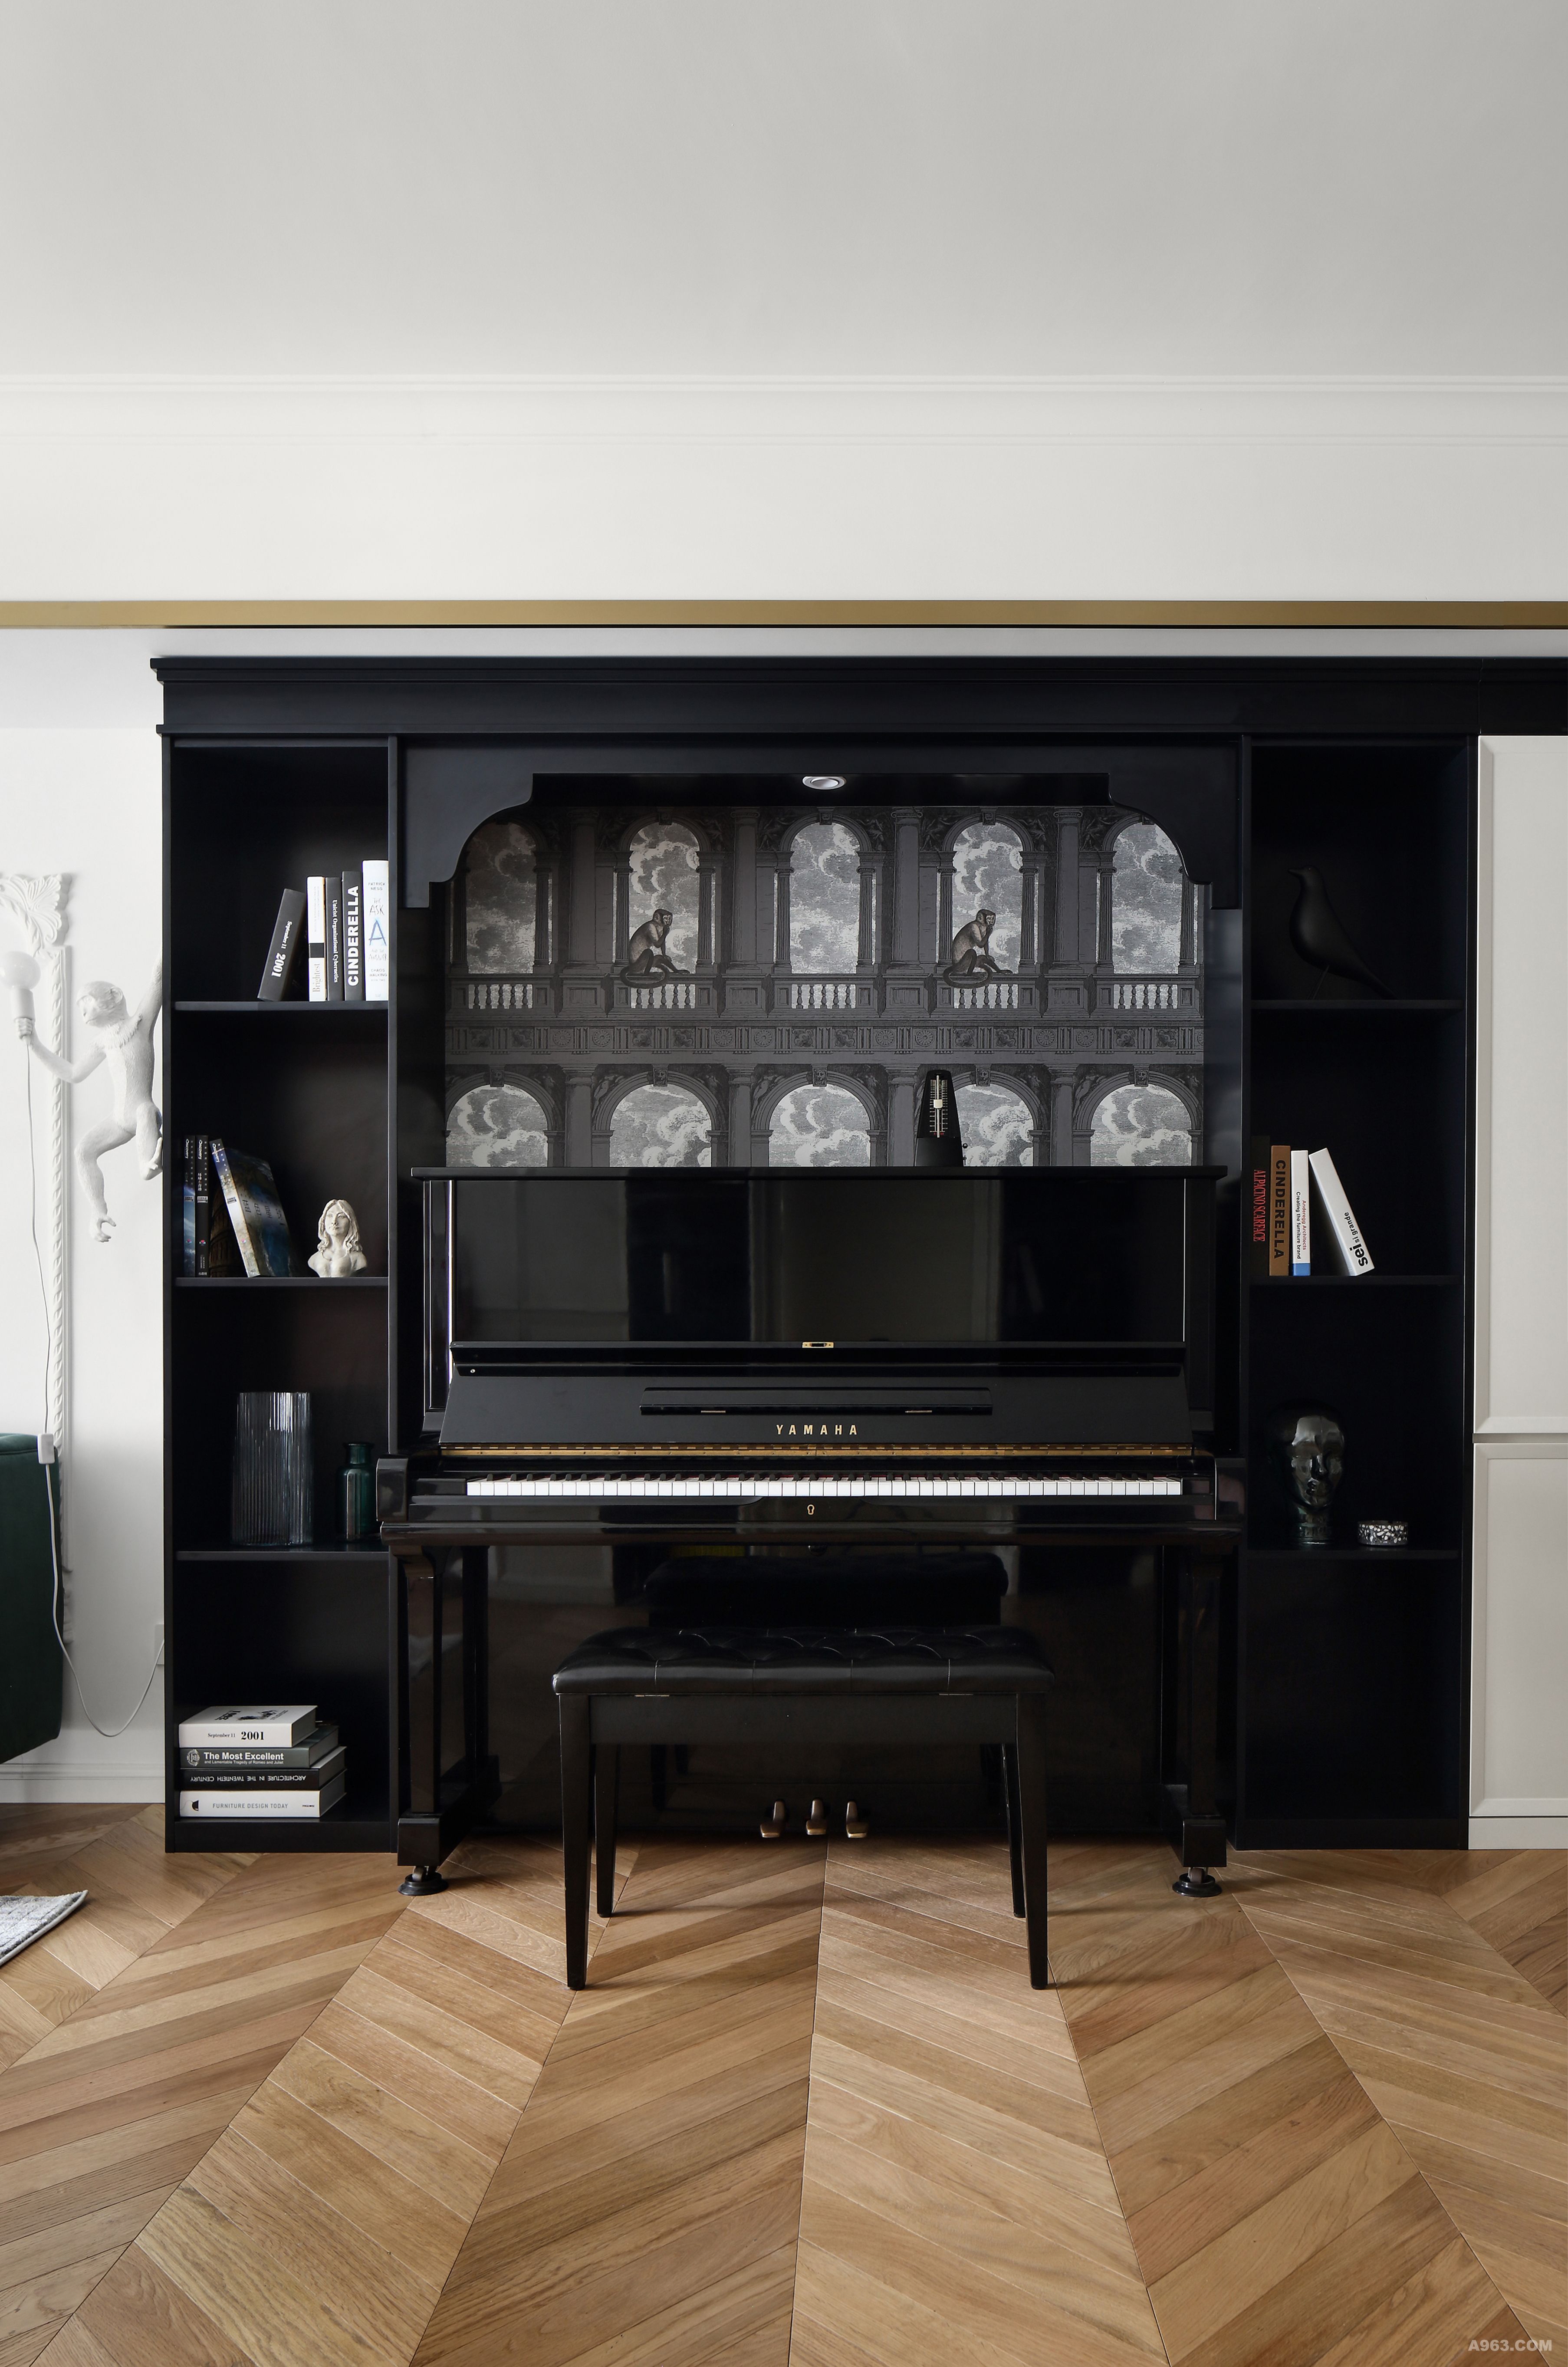 客厅钢琴区域，色彩简洁明了，开放式储物空间和有门储物柜协调统一。